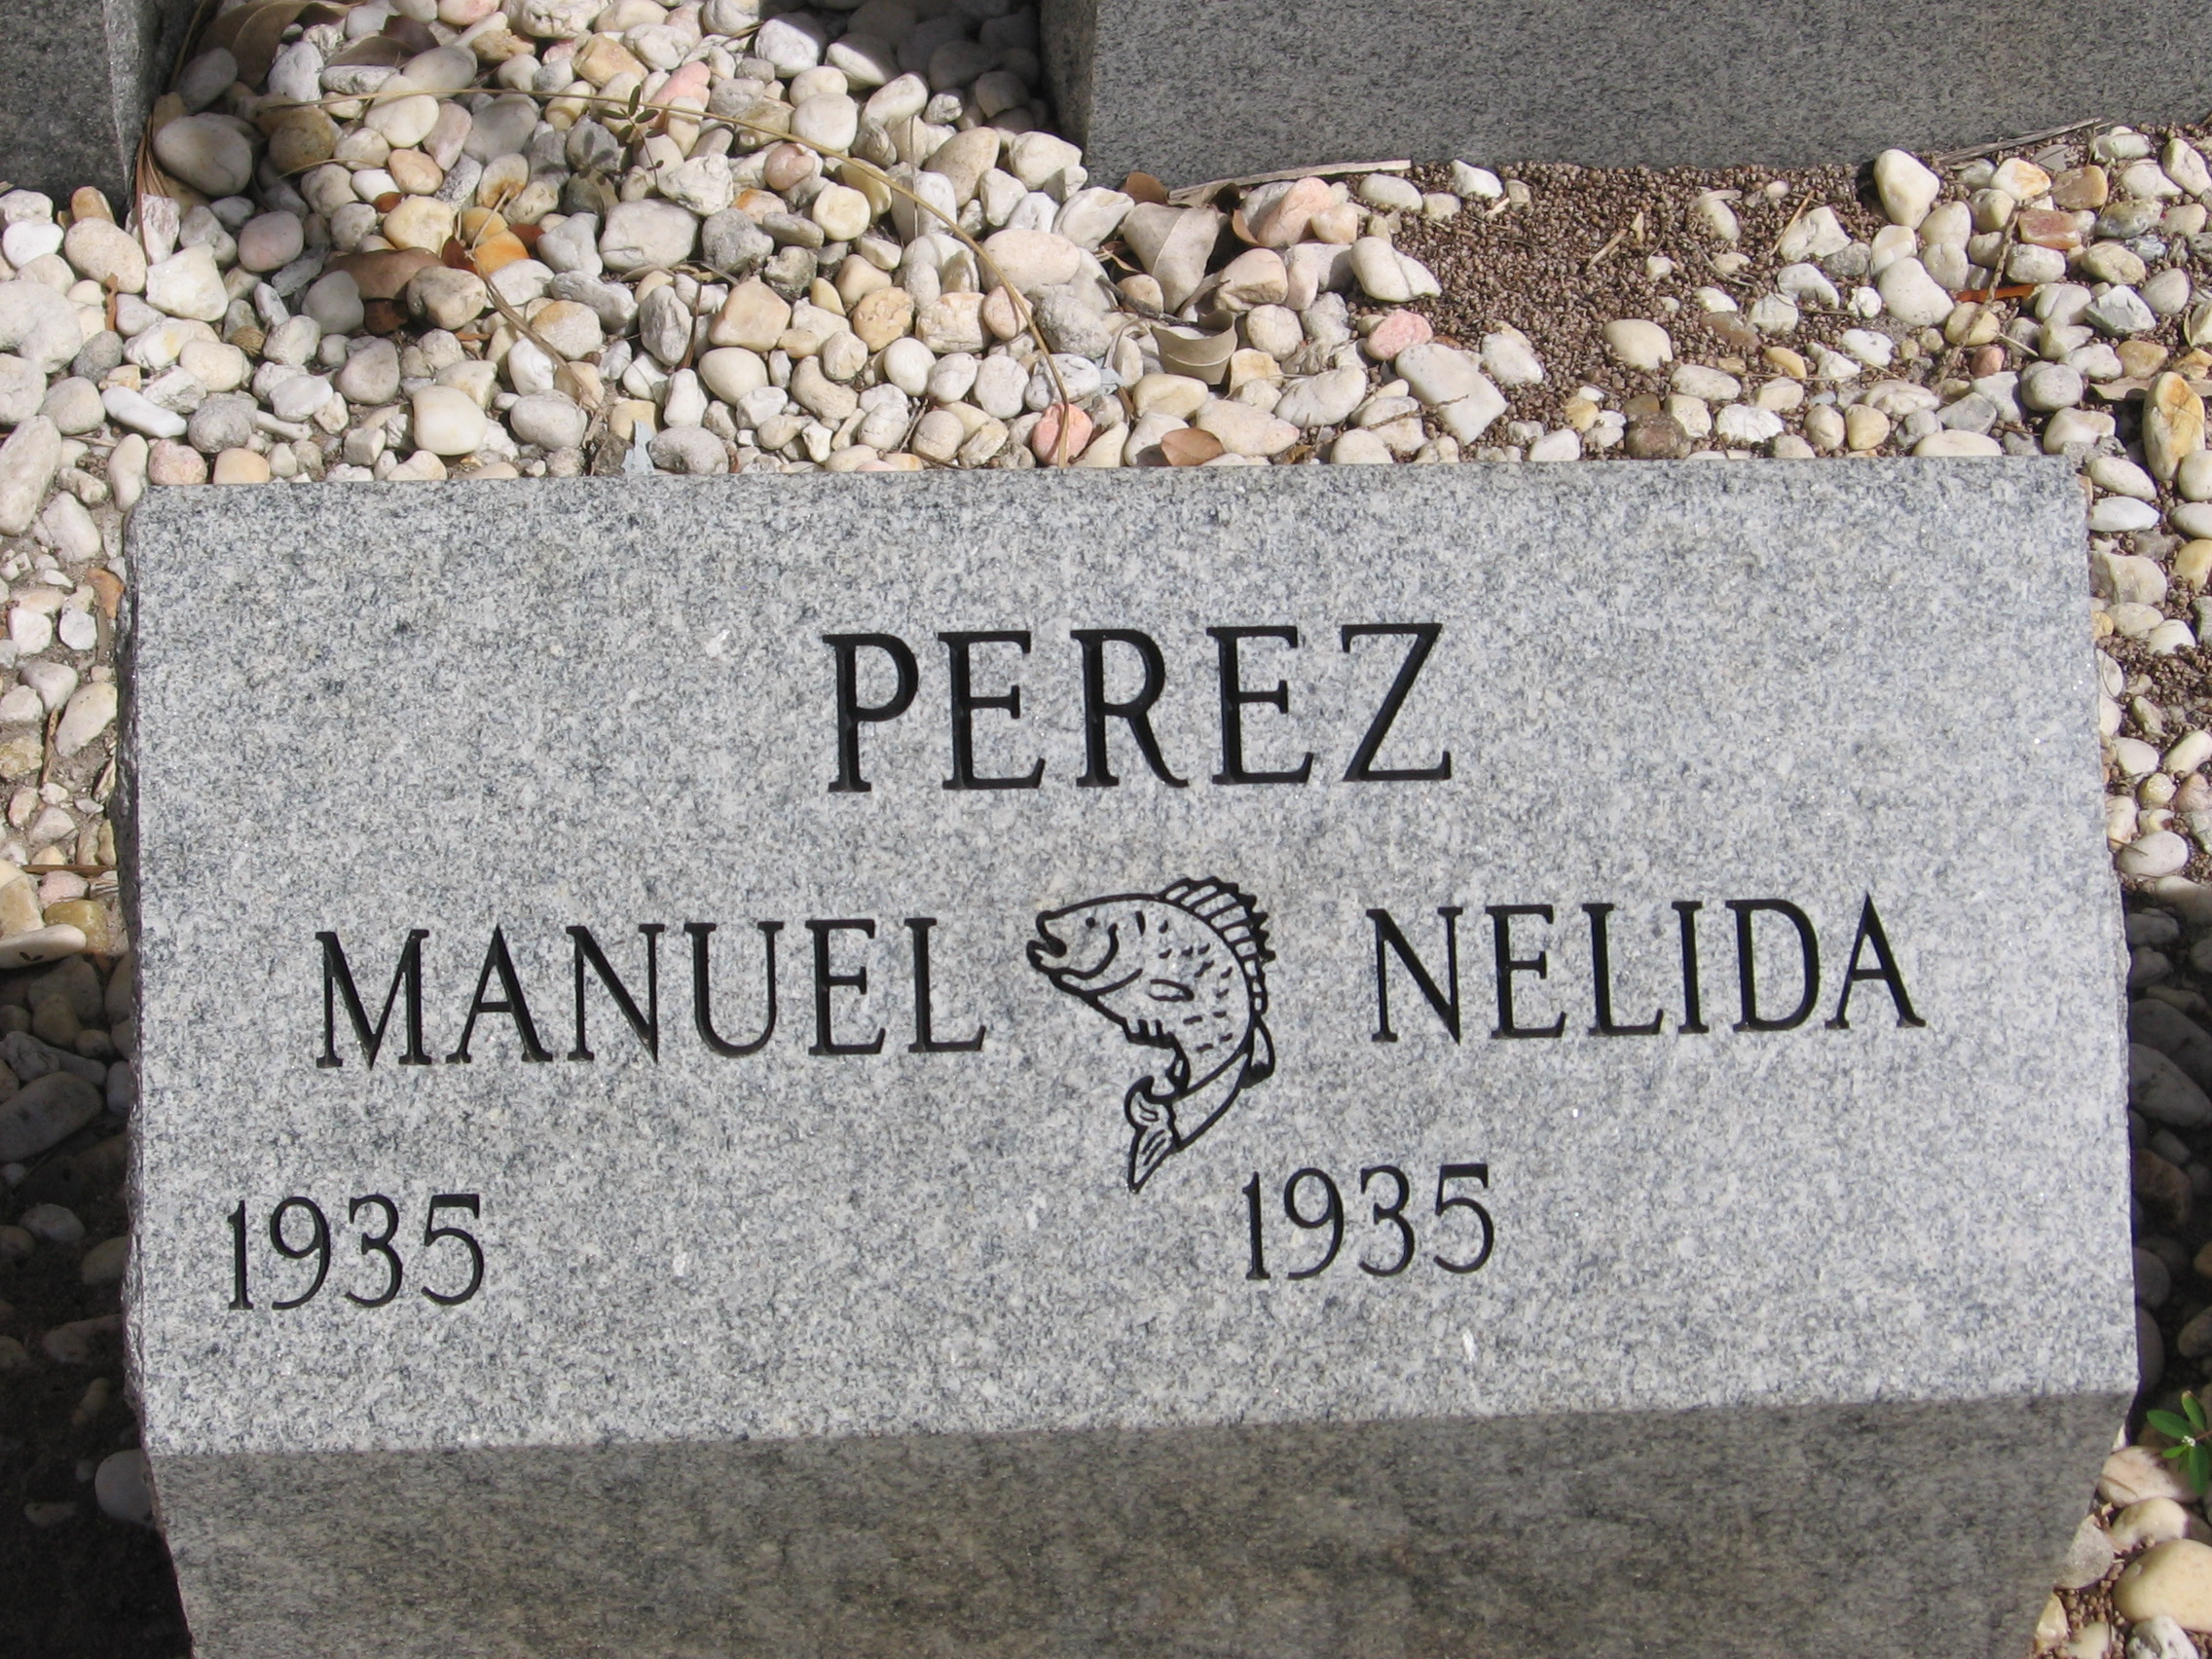 Nelida Perez